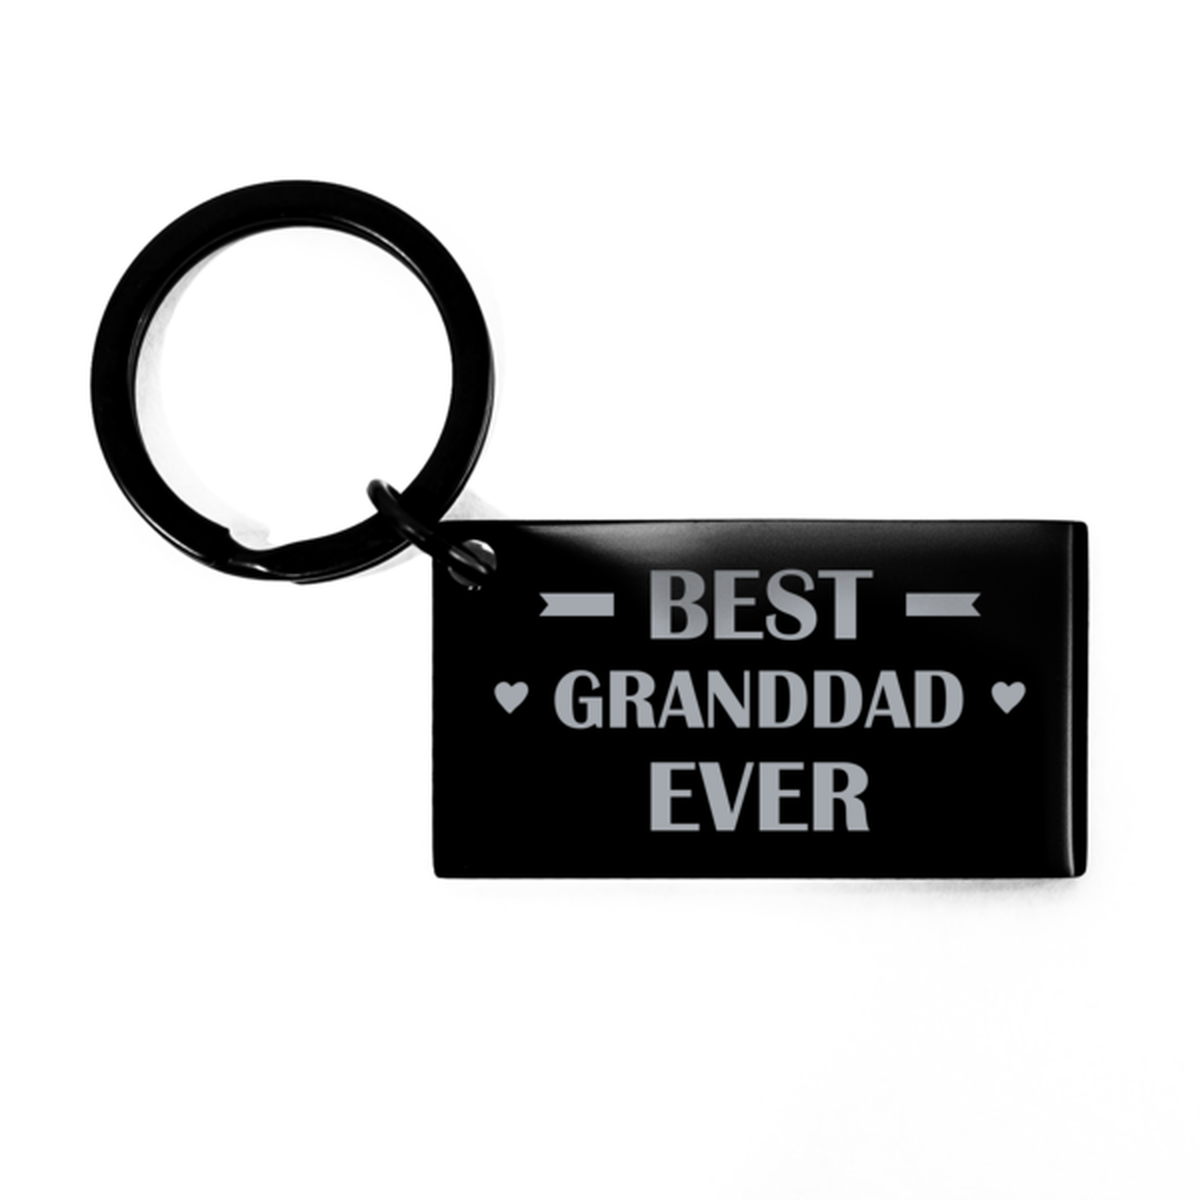 Best Granddad Ever Granddad Gifts, Funny Black Keychain For Granddad, Birthday Engraved Keyring Presents For Men